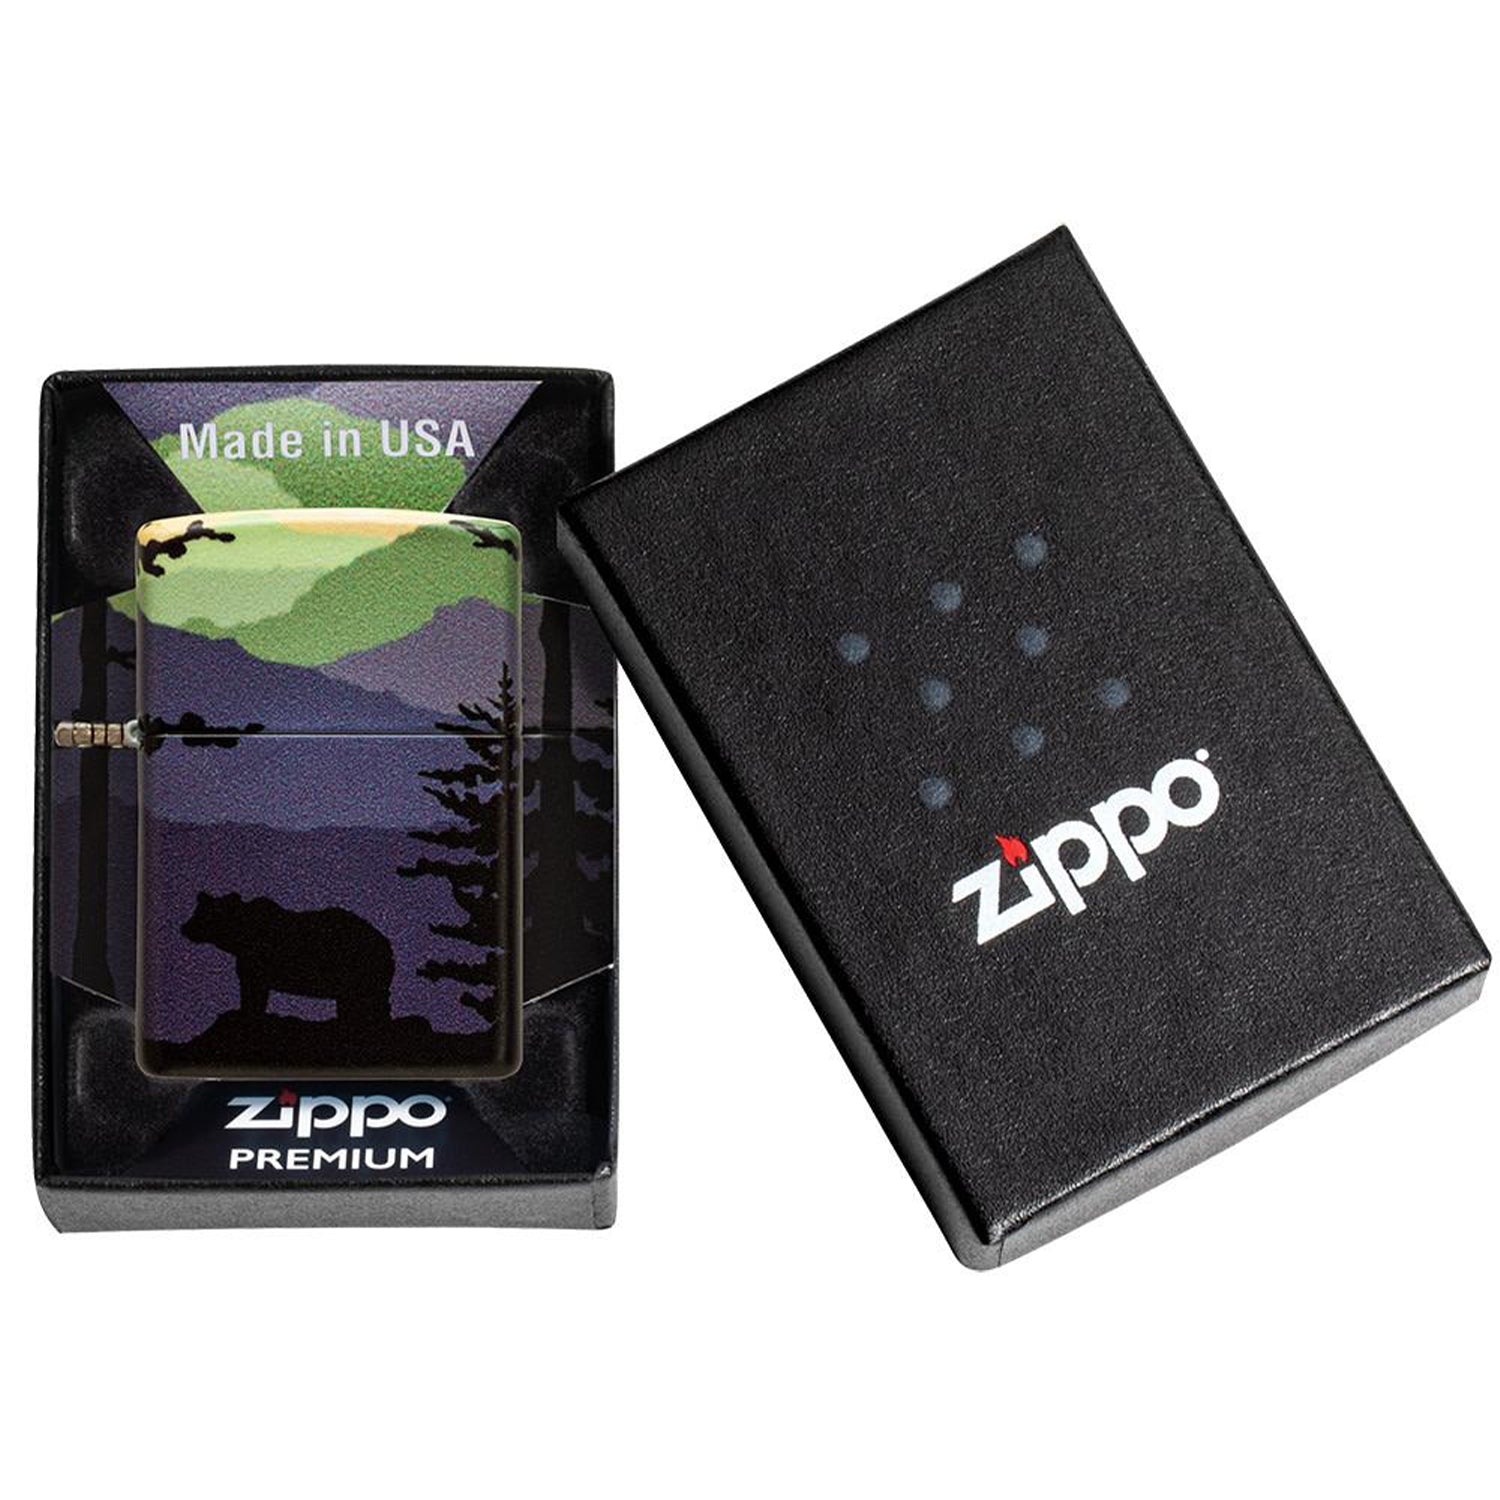 香港Zippo 打火機- 正品防風軍事街頭風格| 旺角Zippo門市- 美國製造 